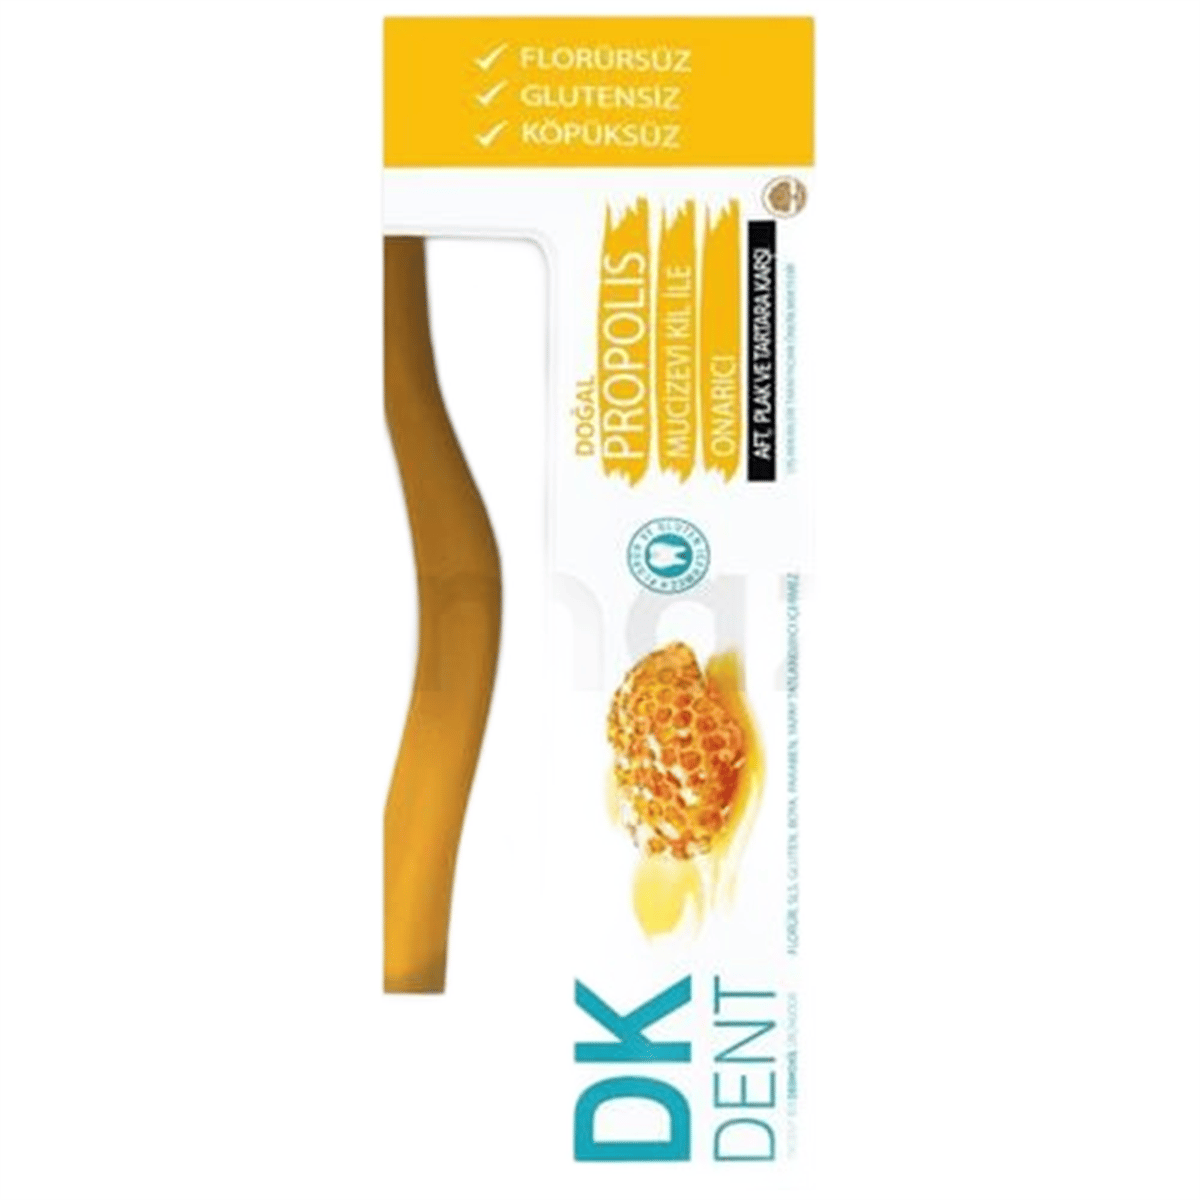 DK Dent 7 Propolis Diş Macunu 75 ml - Diş Fırçası Hediyeli 63,10